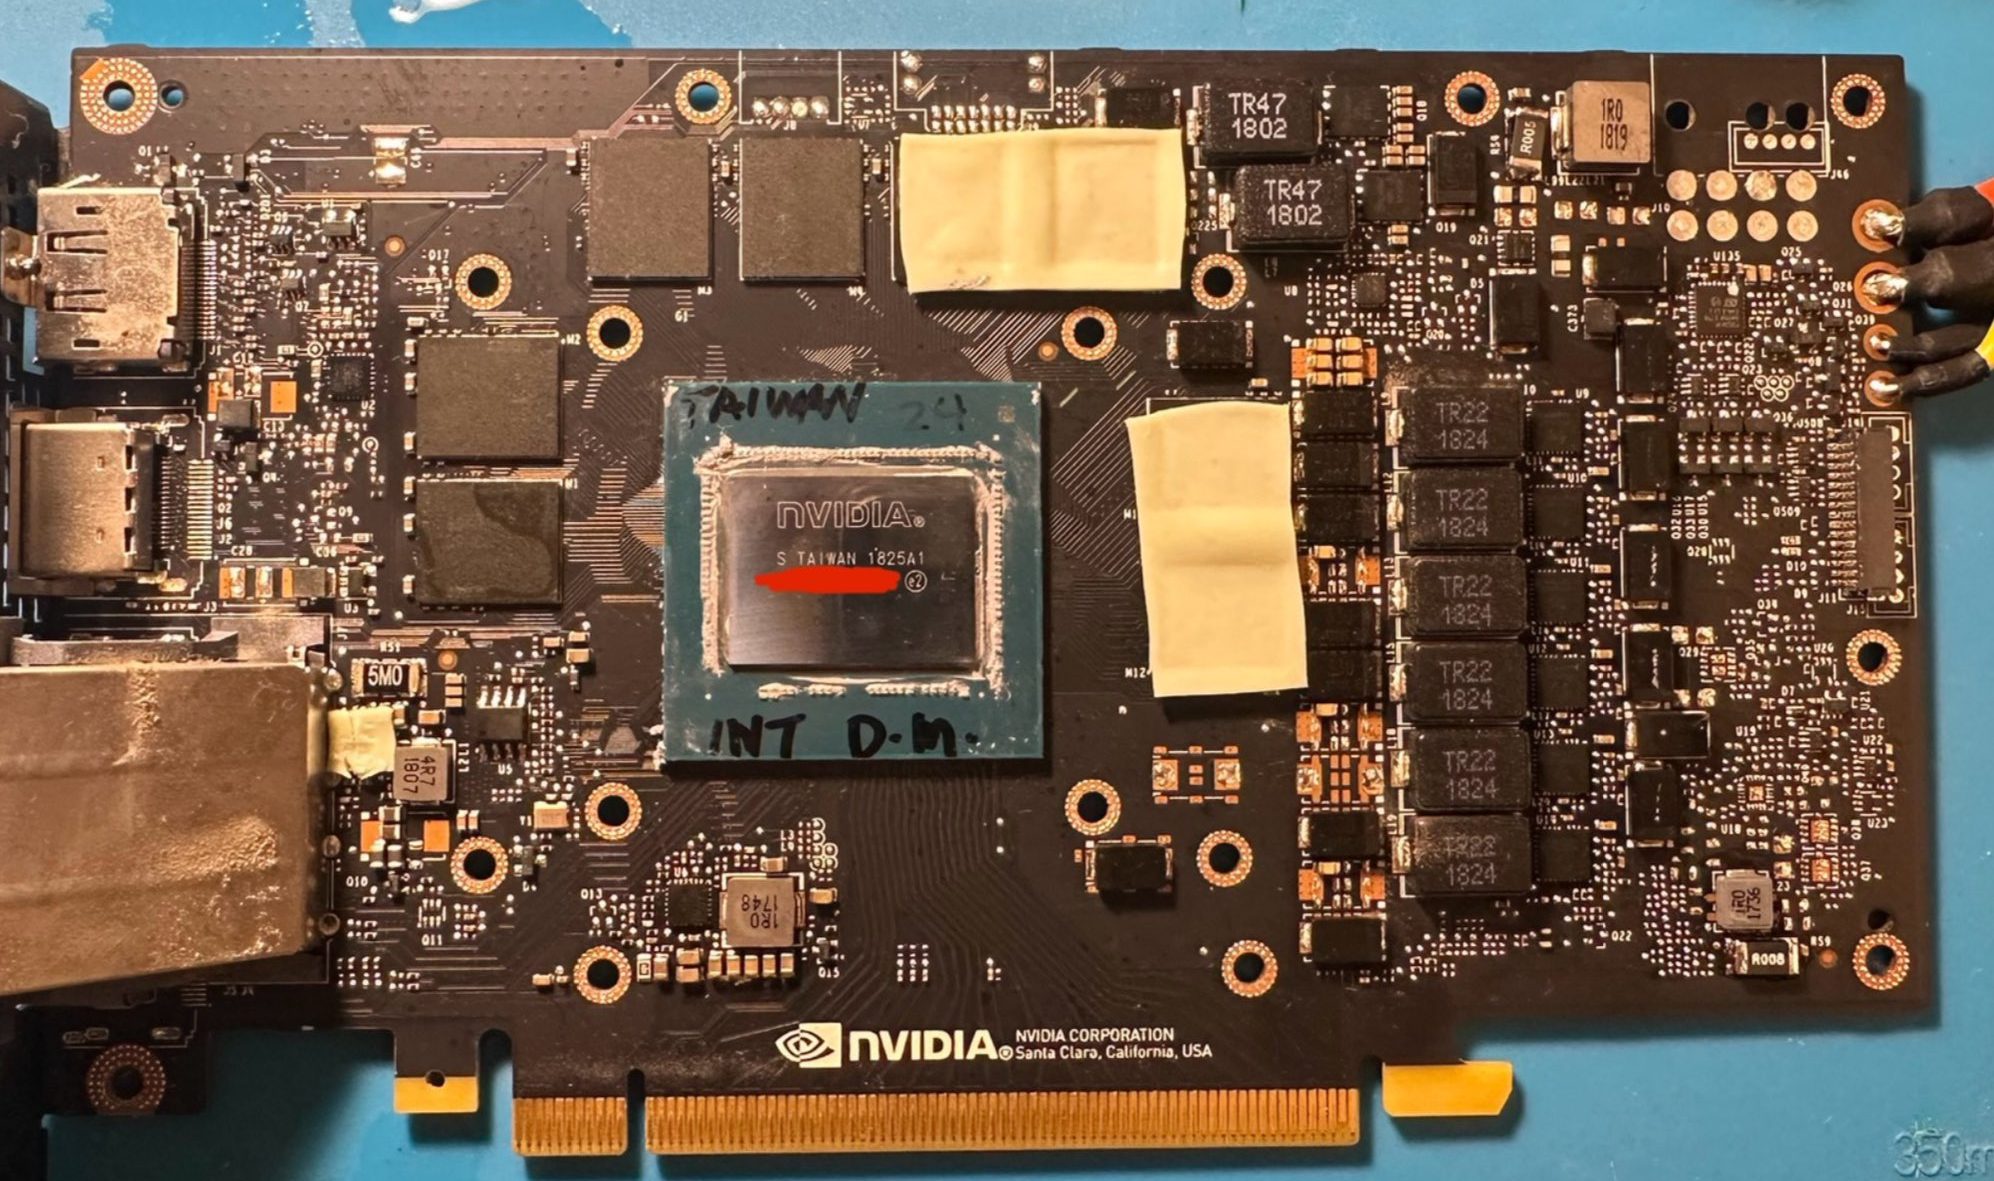 NVIDIA GeForce GTX 2070 GPU Mühendisliği Örneği Tespit Edildi: 2304 Yerine 2176 Çekirdek, RTX 2070 vBIOS 3 ile Flashlanabilir